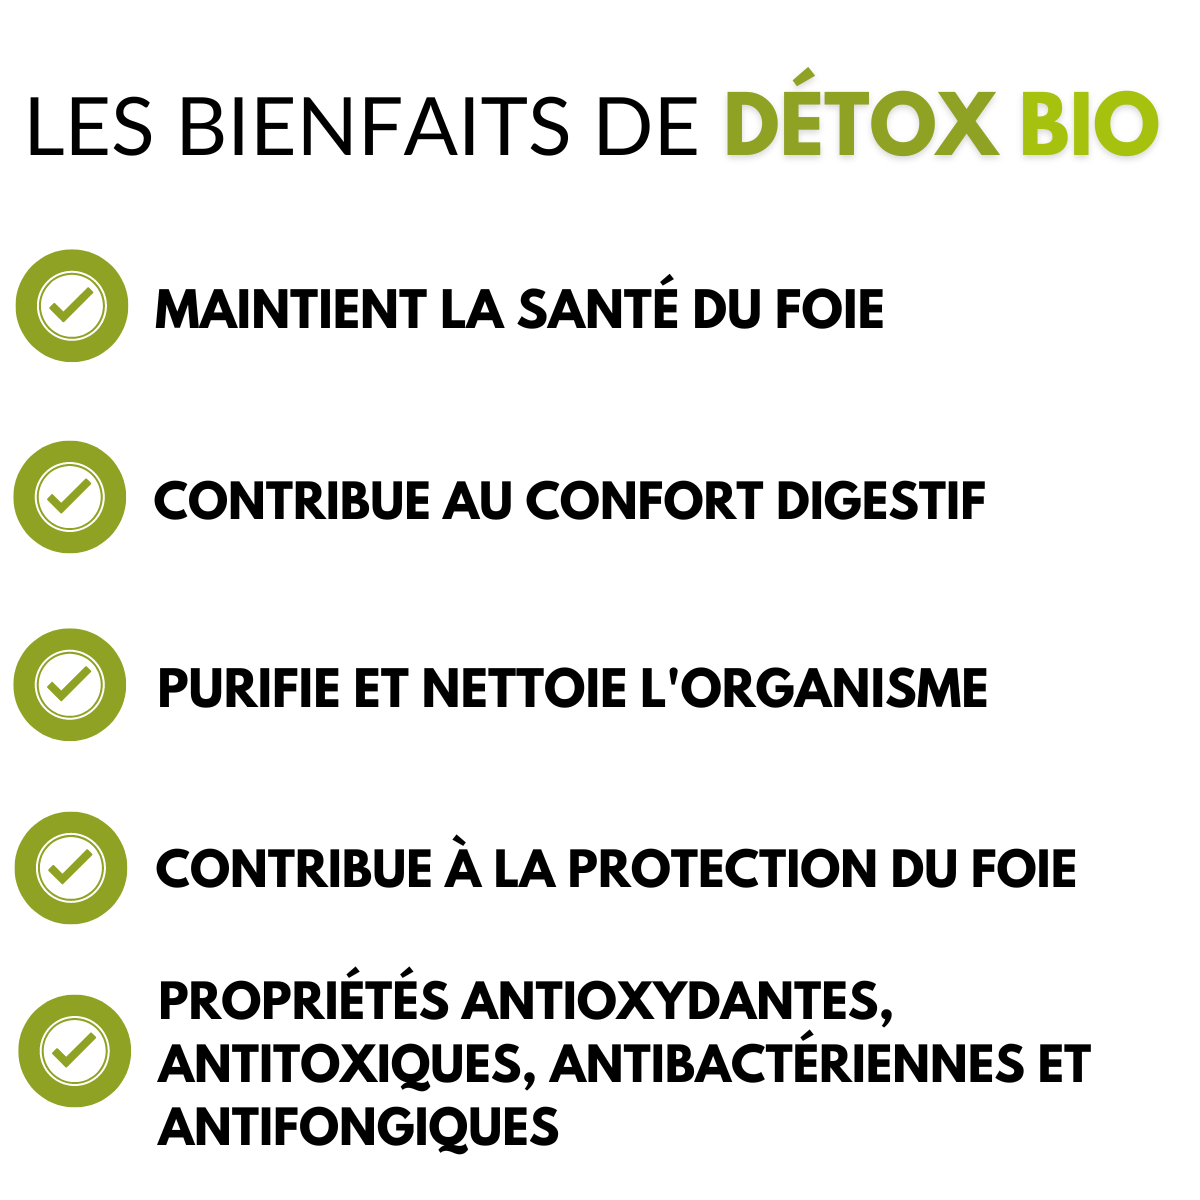 Détox bio nutrition pro